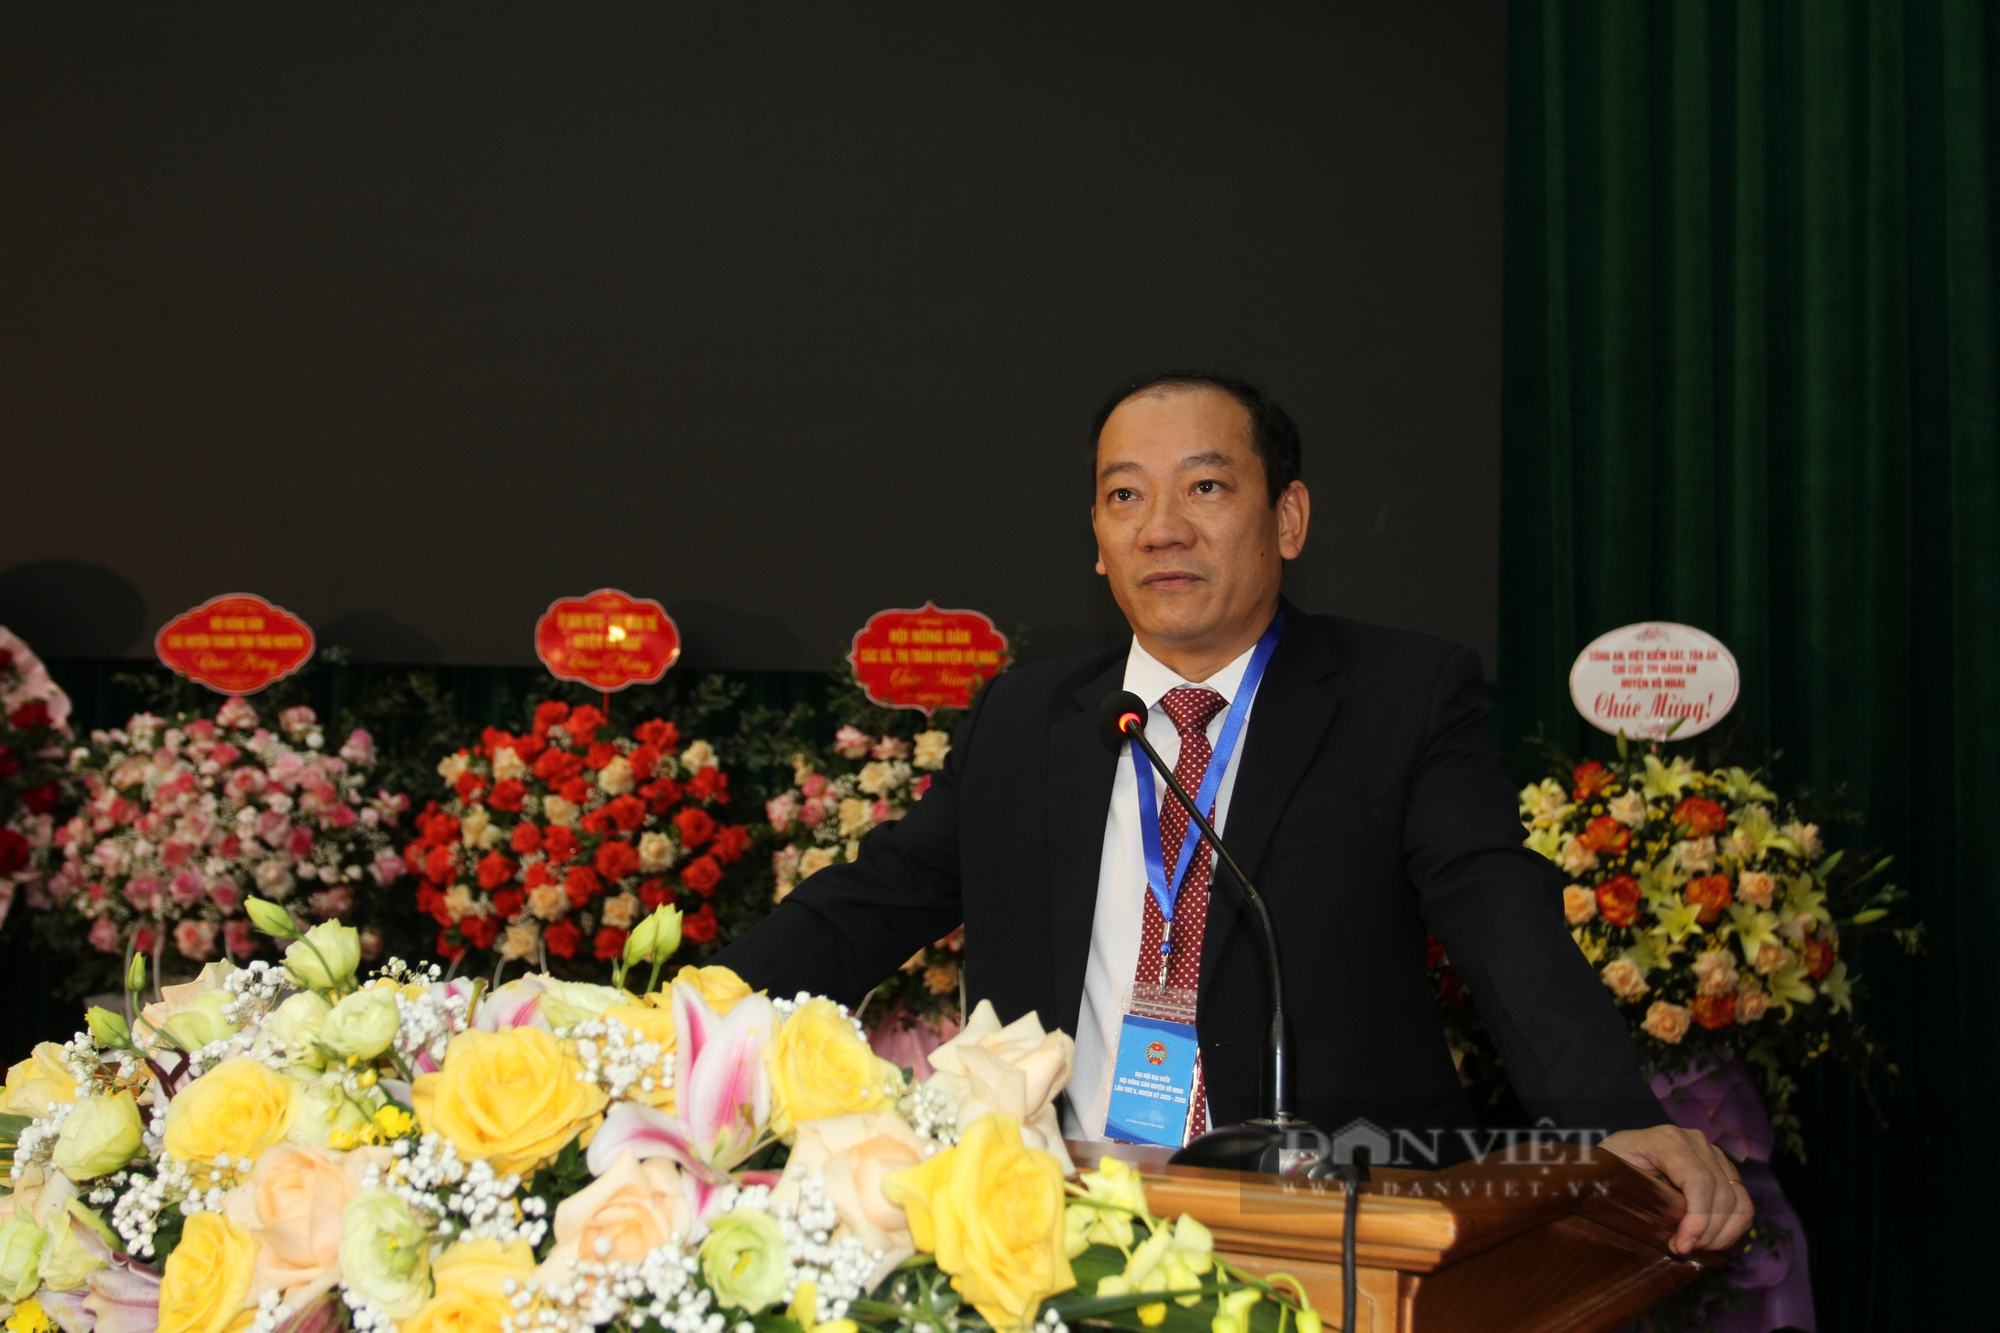 Khai mạc Đại hội đại biểu HND huyện Võ Nhai lần thứ X, bà Triệu Thị Nhinh tái đắc cử chức danh Chủ tịch - Ảnh 3.